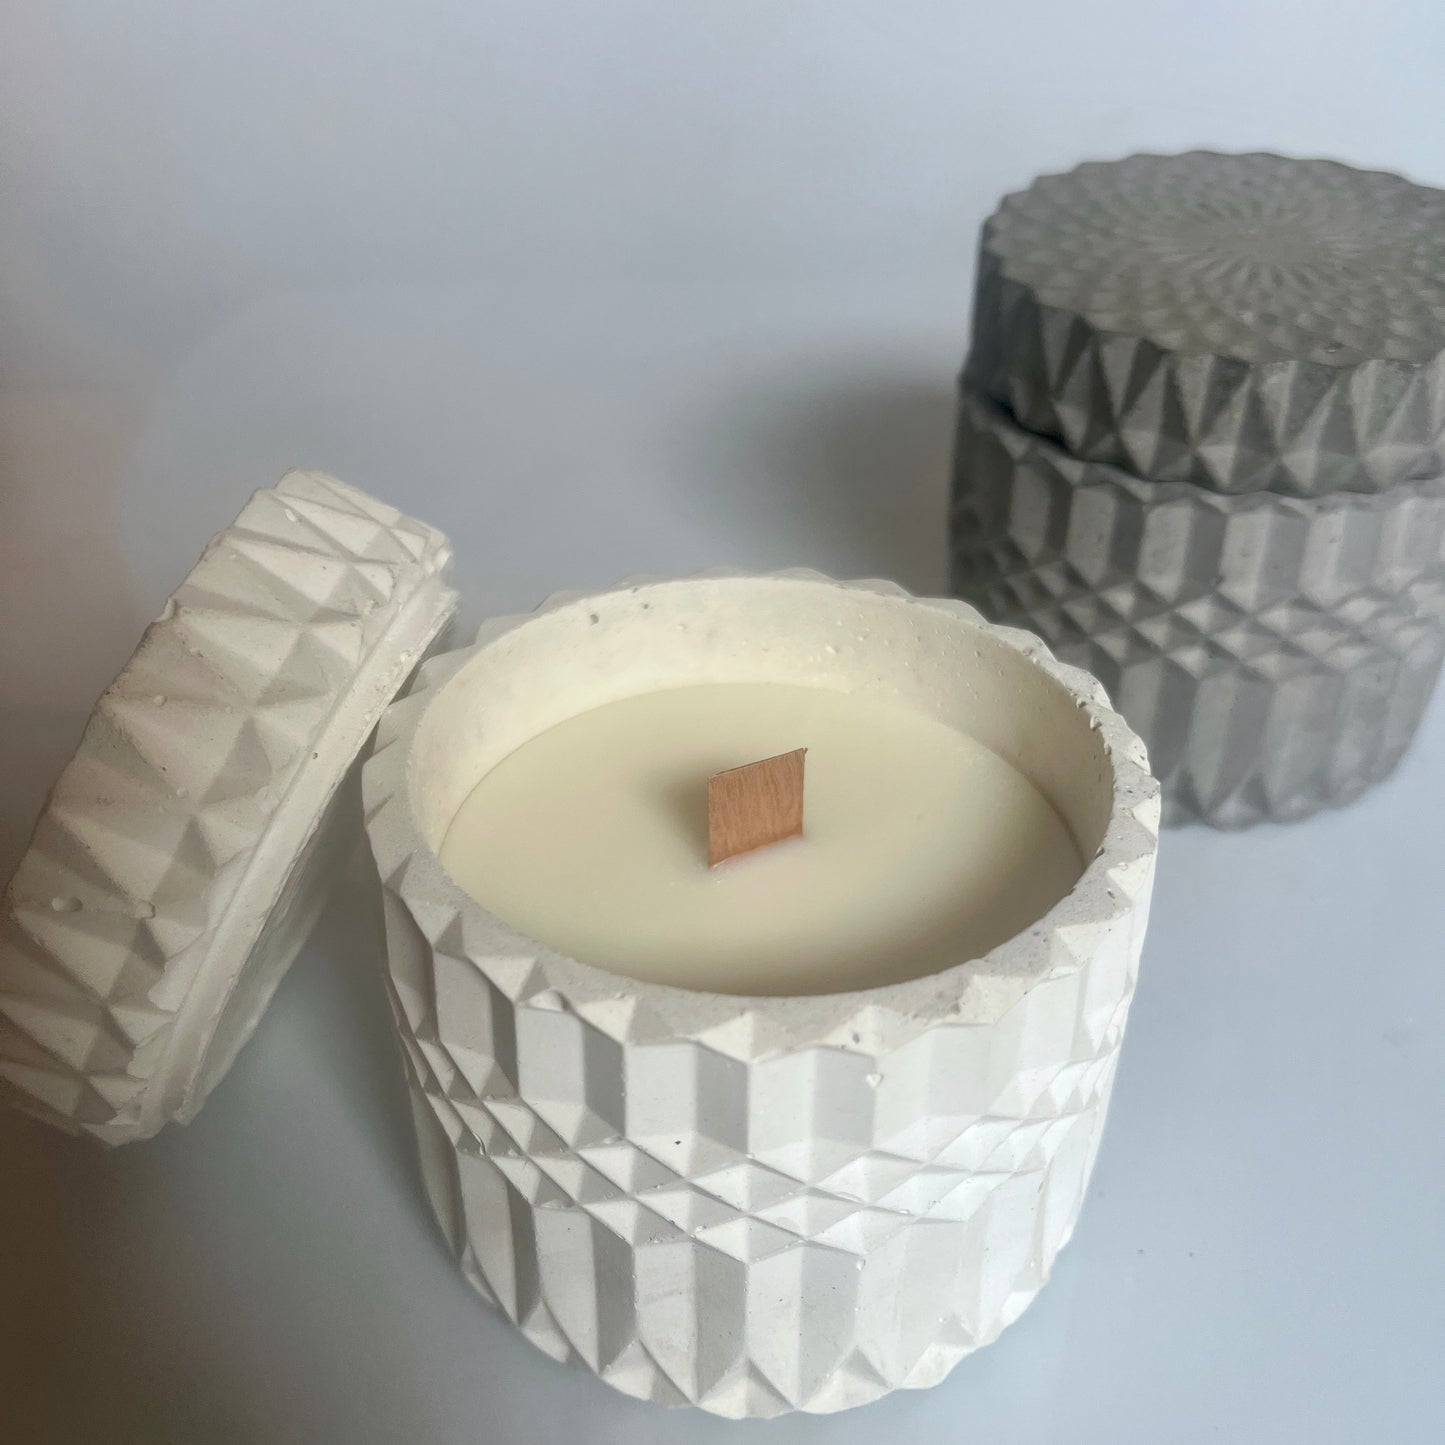 candele Pandora in cemento e cera di soia profumata con oli essenziali naturali colore grigio e bianco